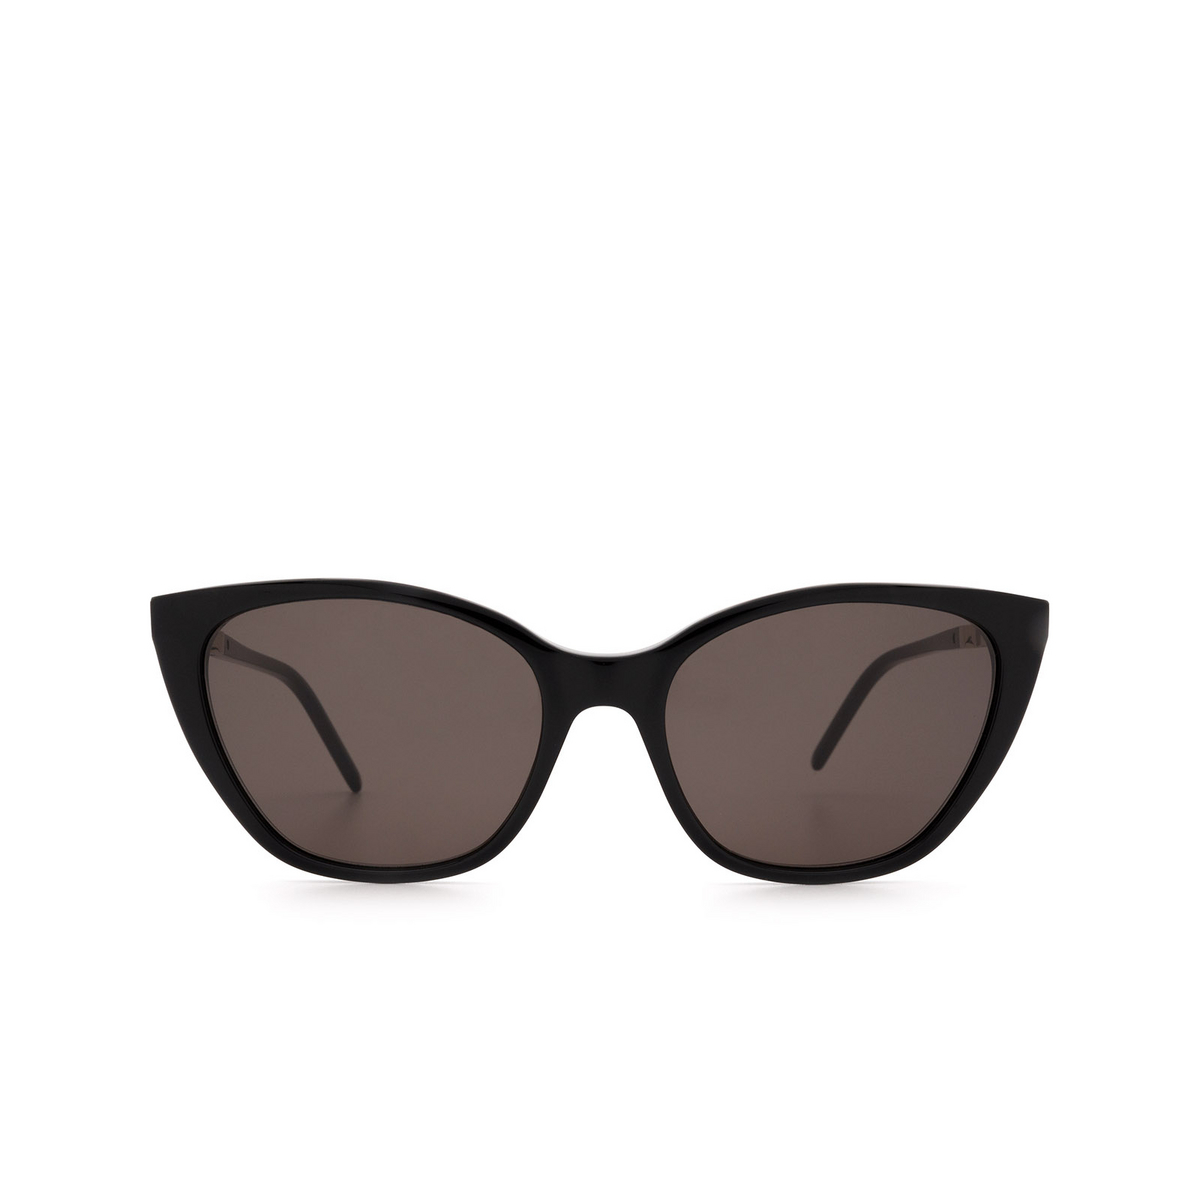 Saint Laurent® Cat-eye Sunglasses: SL M69 color 001 Black - 1/3